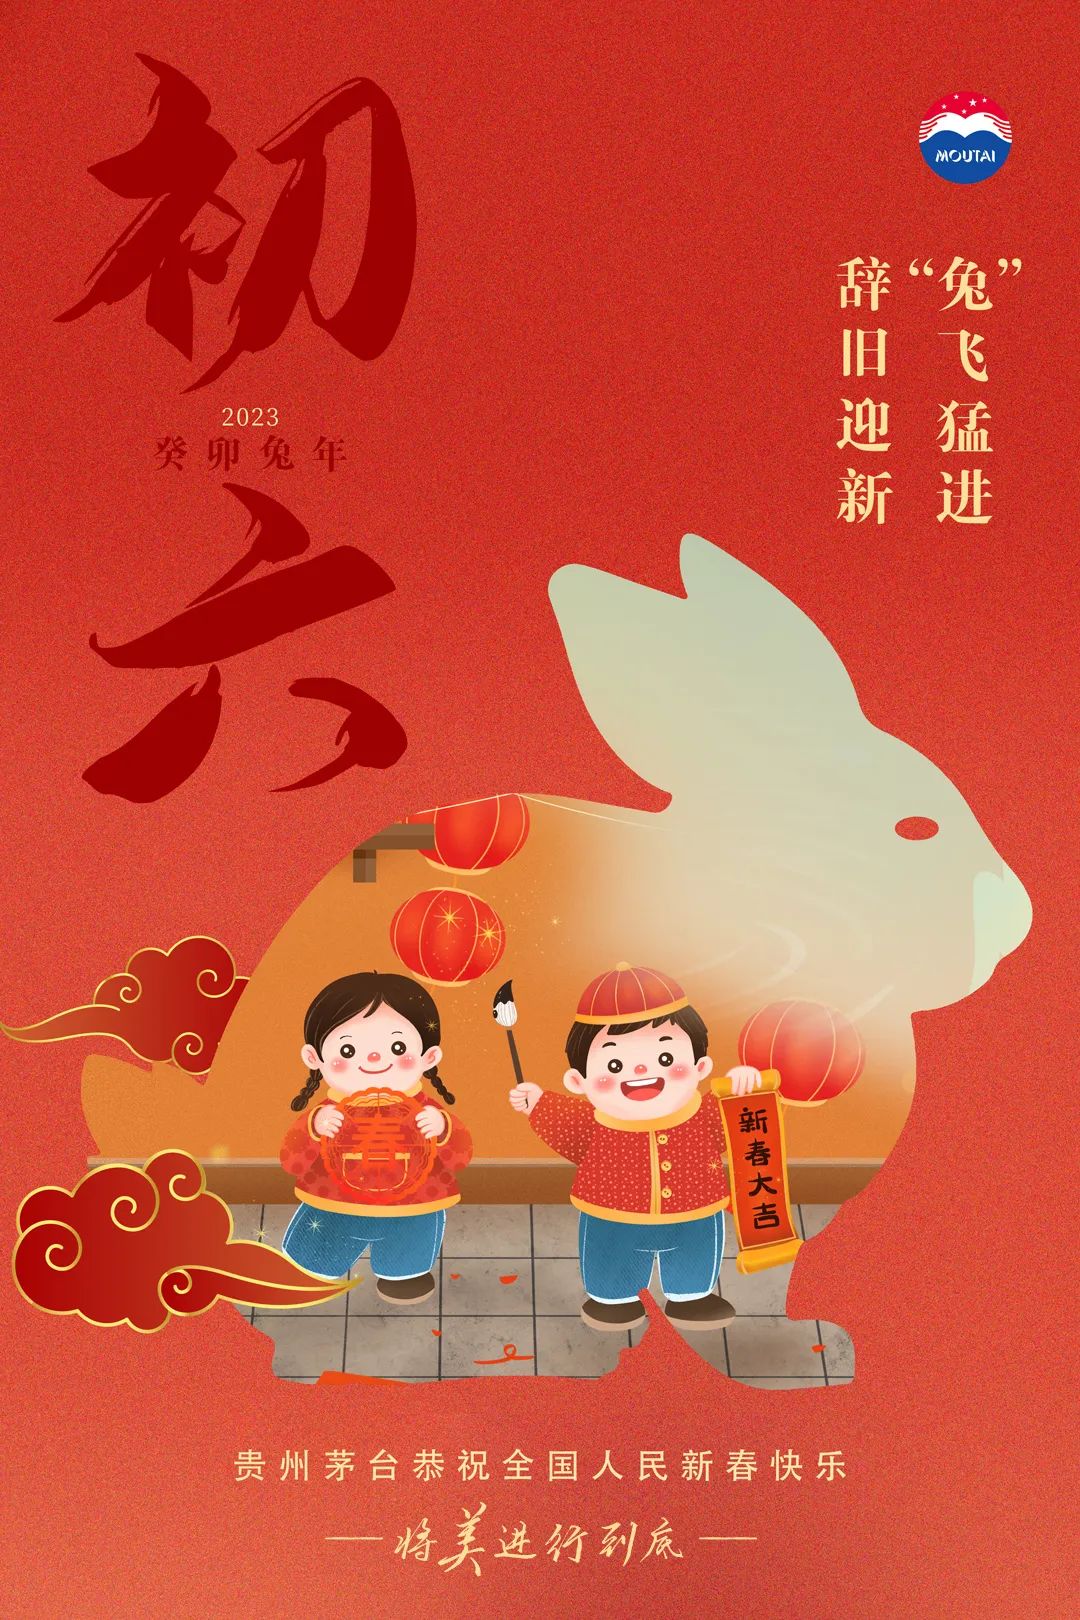 贵州茅台春节海报大赏，你最中意哪一幅？